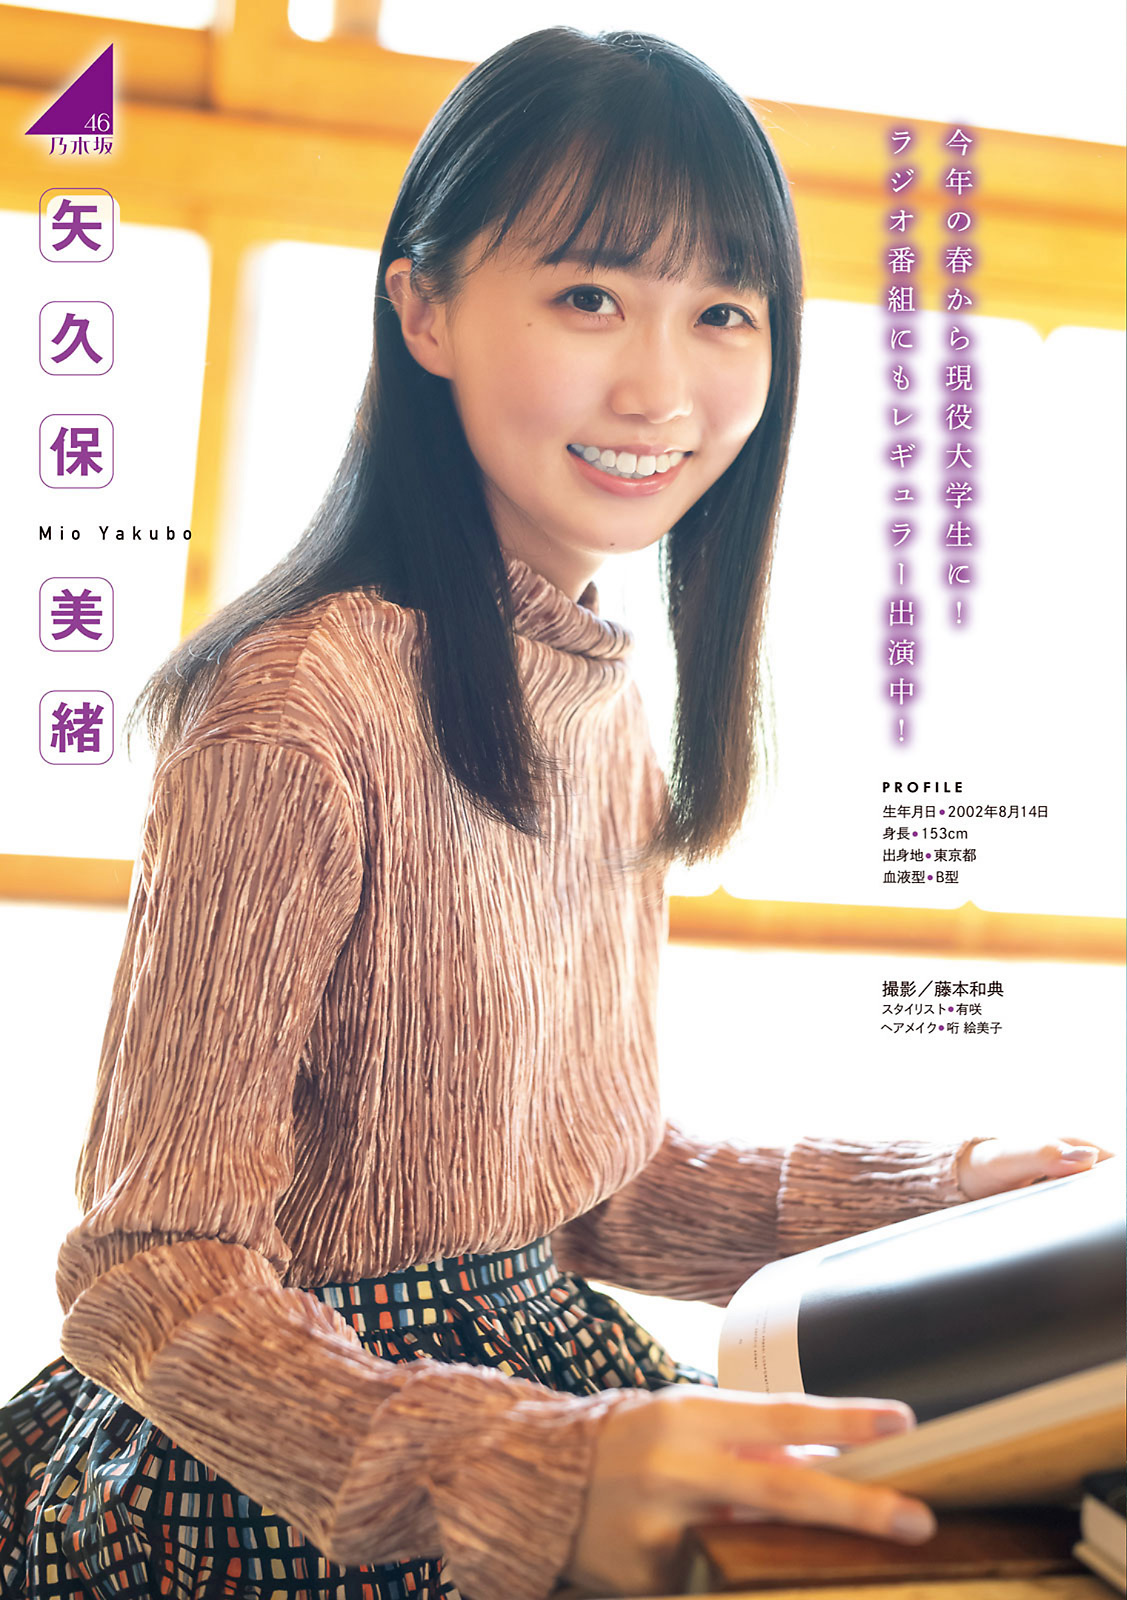 乃木坂46 & 櫻坂46, Young Magazine 2021 No.36-37 (ヤングマガジン 2021年36-37号)